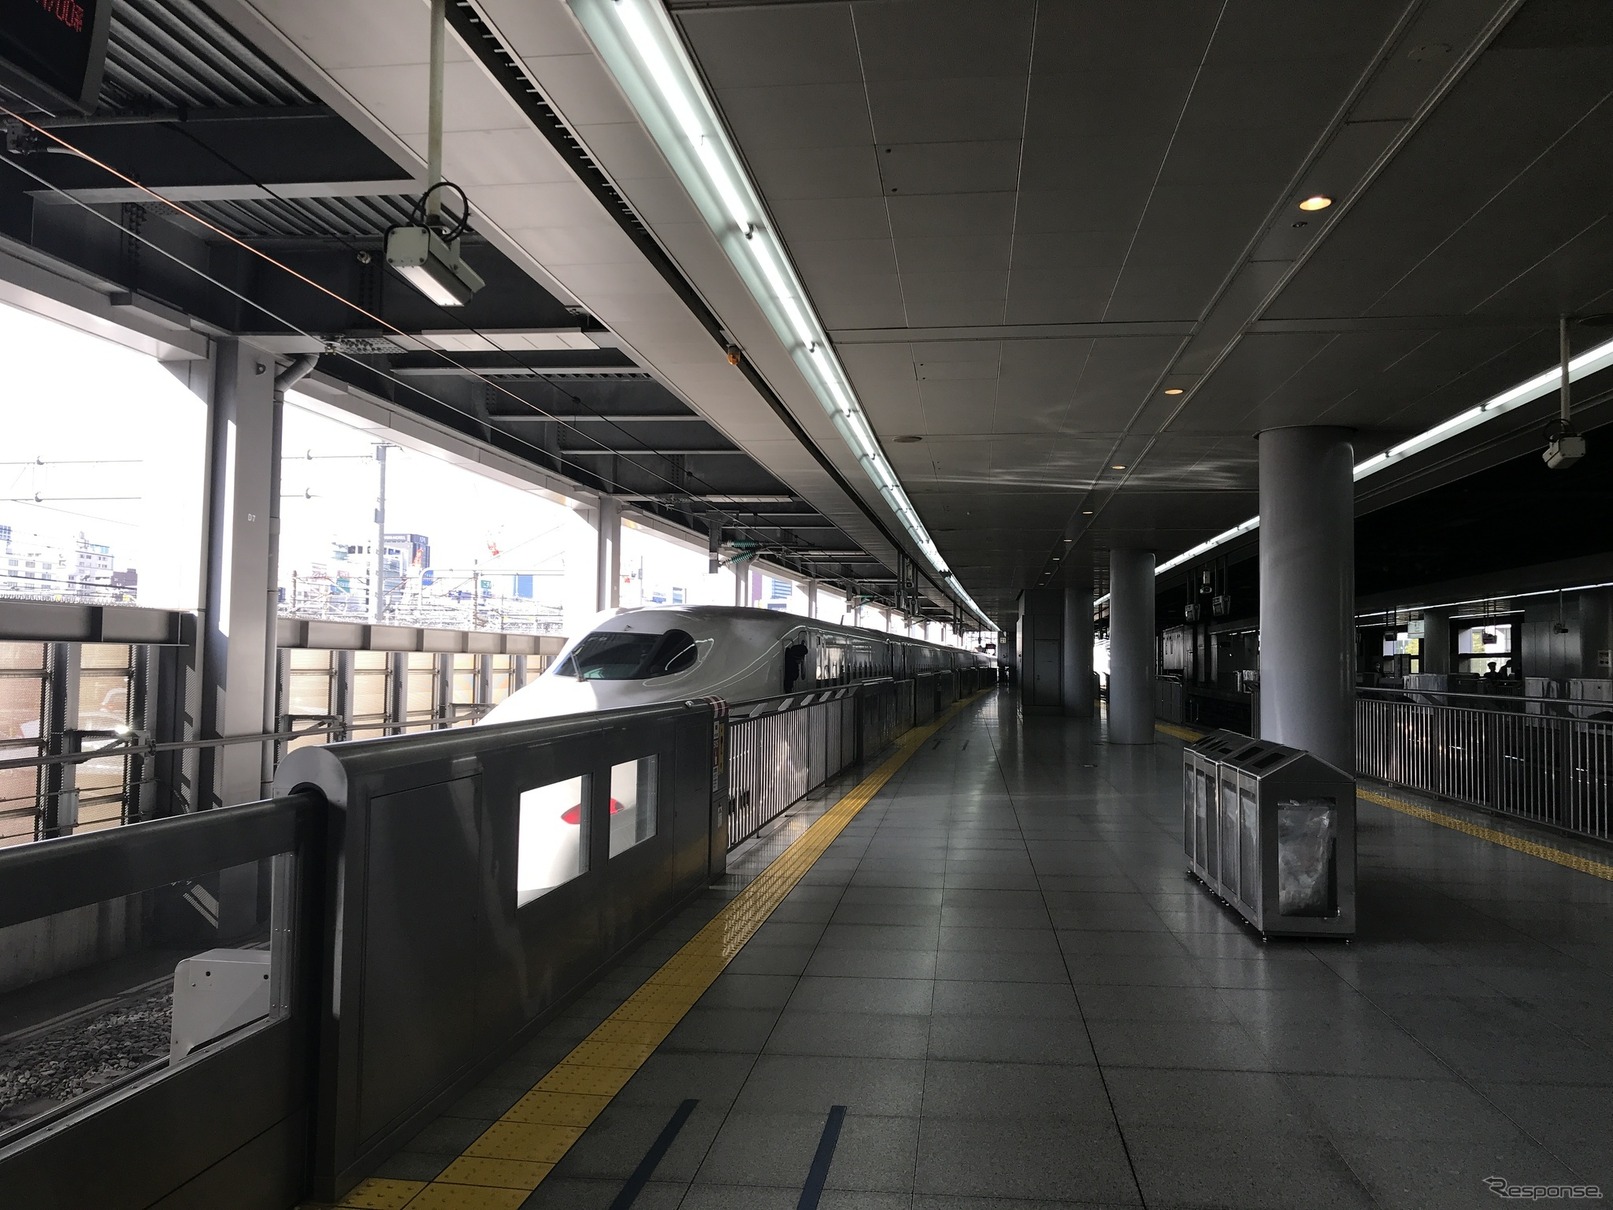 東海道新幹線品川駅のホーム。リニアのホームは名古屋駅と同様、大深度地下に設けられるため、川勝知事は乗換え利便を考慮して名古屋開業時の新幹線からリニアへの乗客移転に慎重な考えを示している。